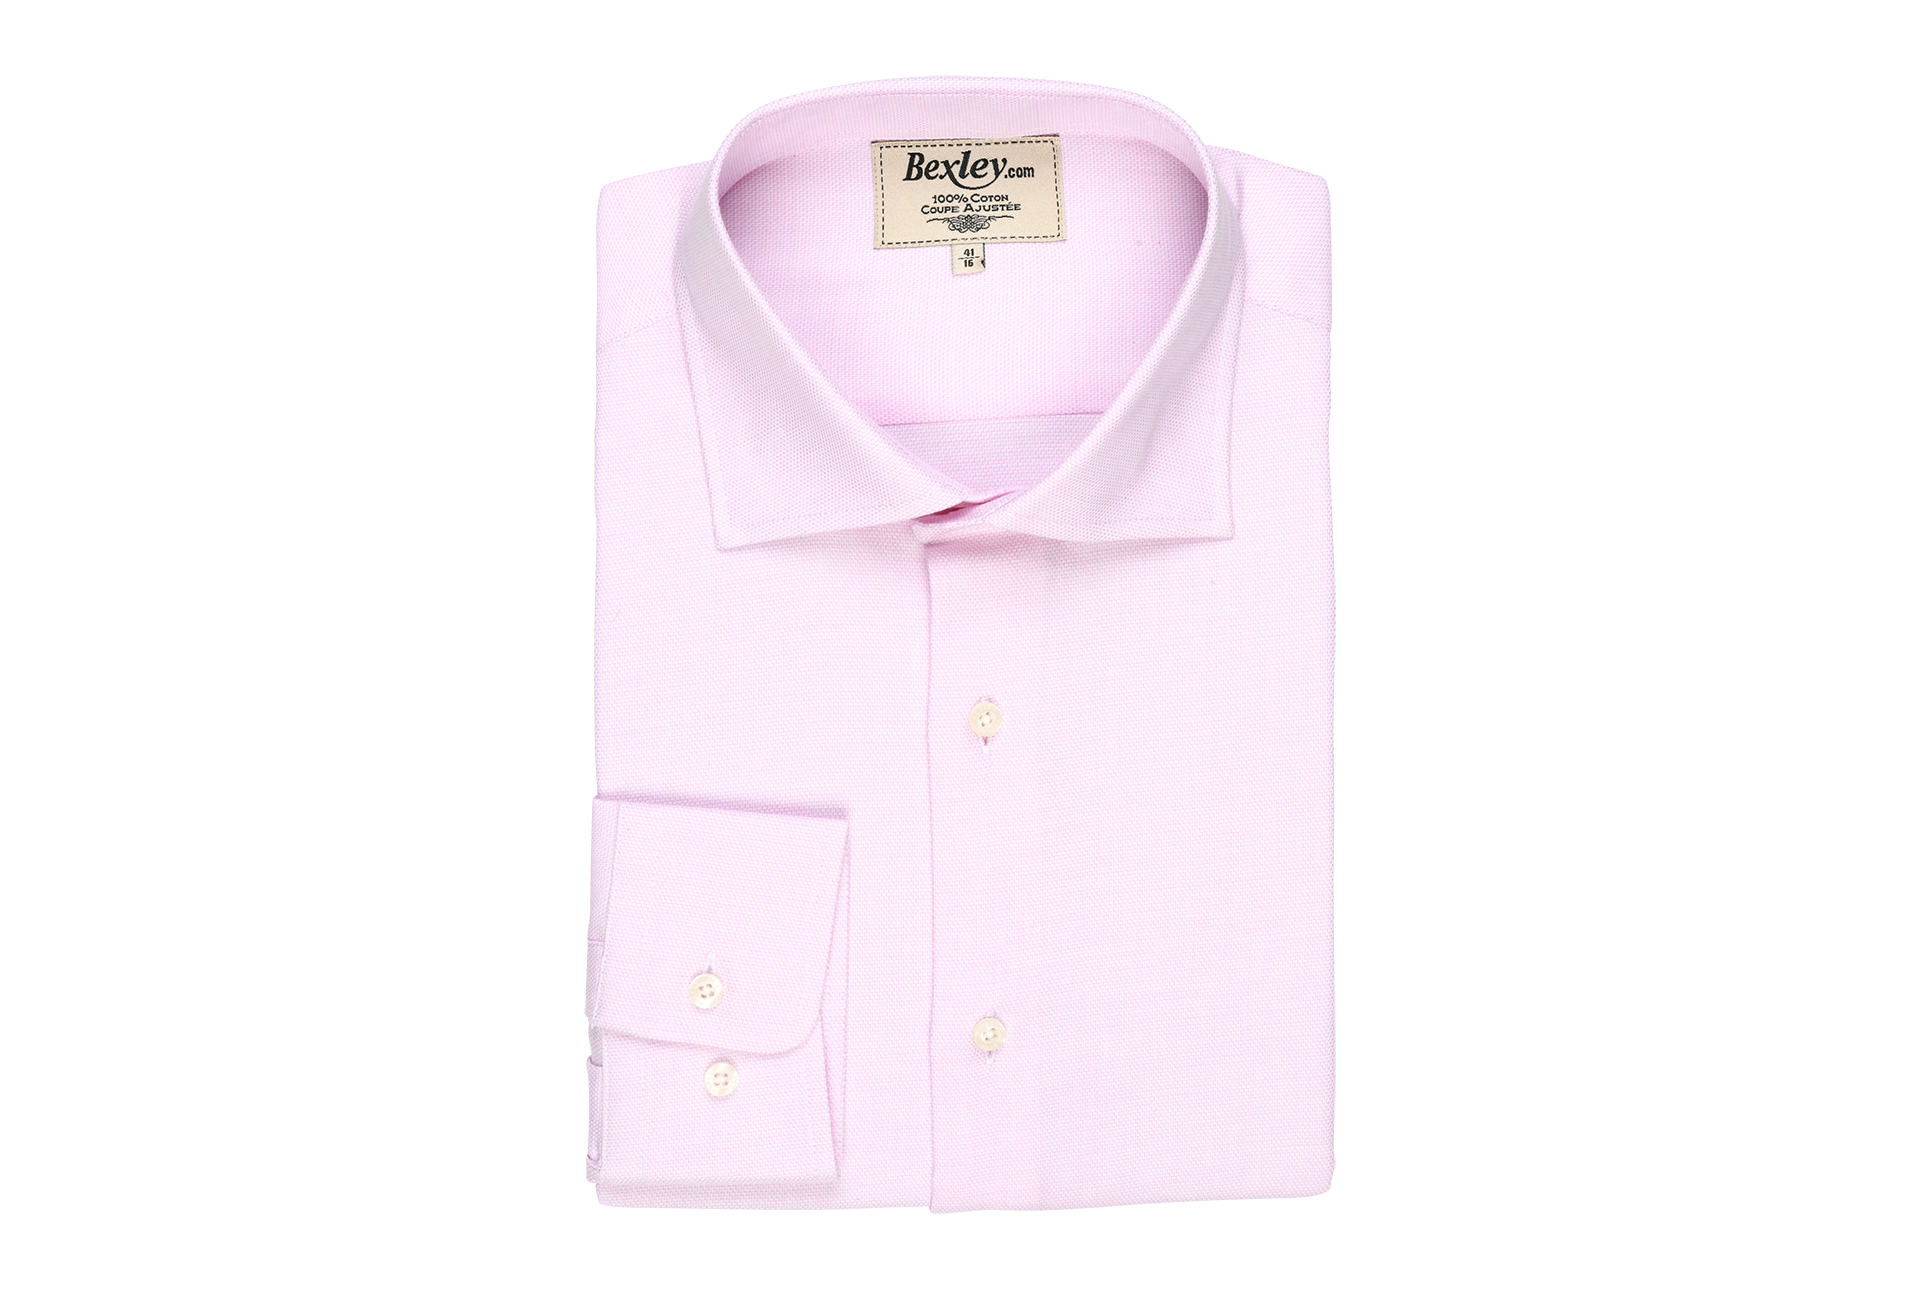 bexley chemise homme 100% coton, rose clair et blanc, manches longues, coupe cintrée